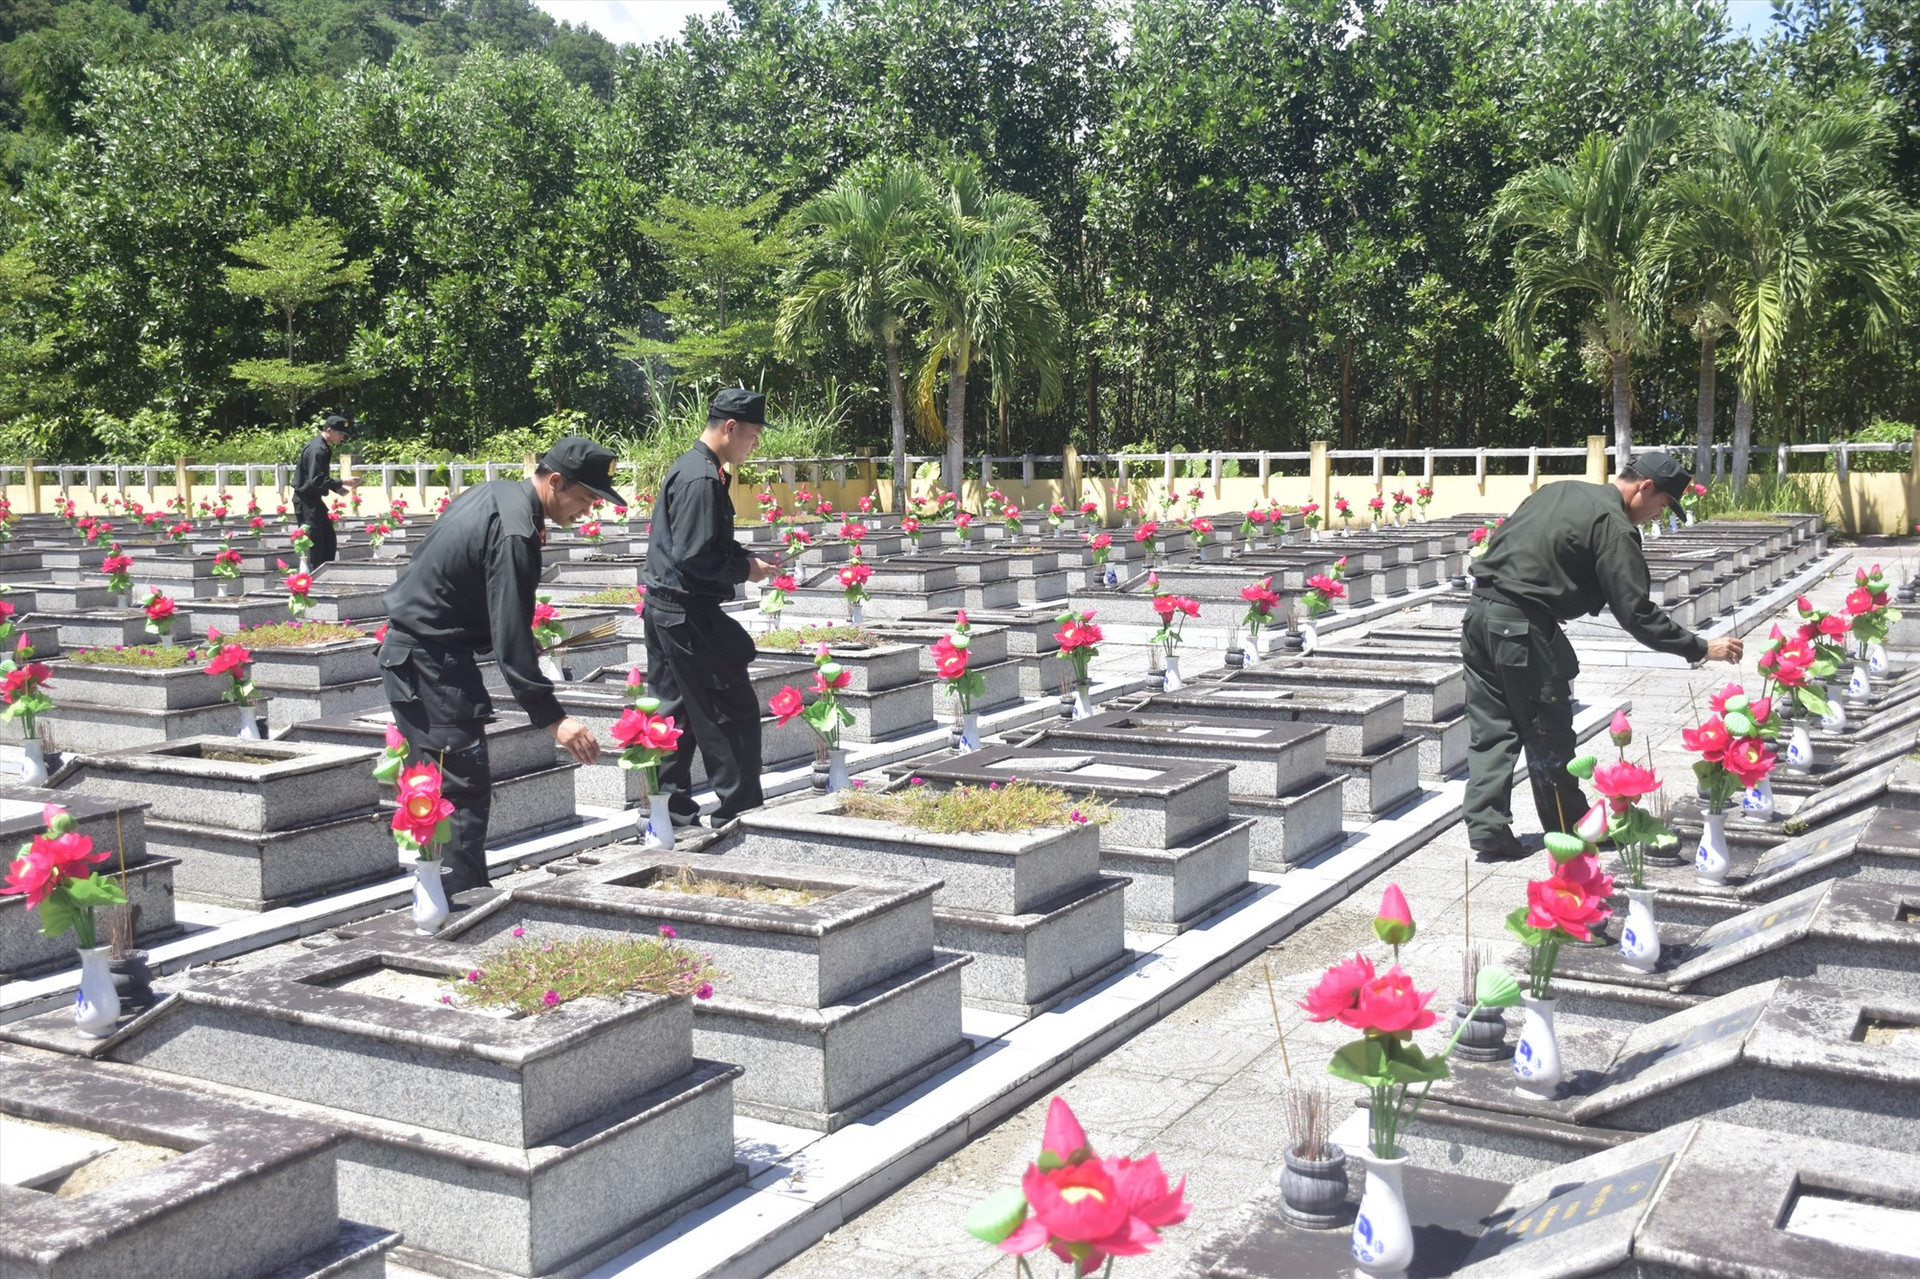 Cán bộ chiến sĩ viếng hương tại Nghĩa trang liệt sĩ. Ảnh: Q.H